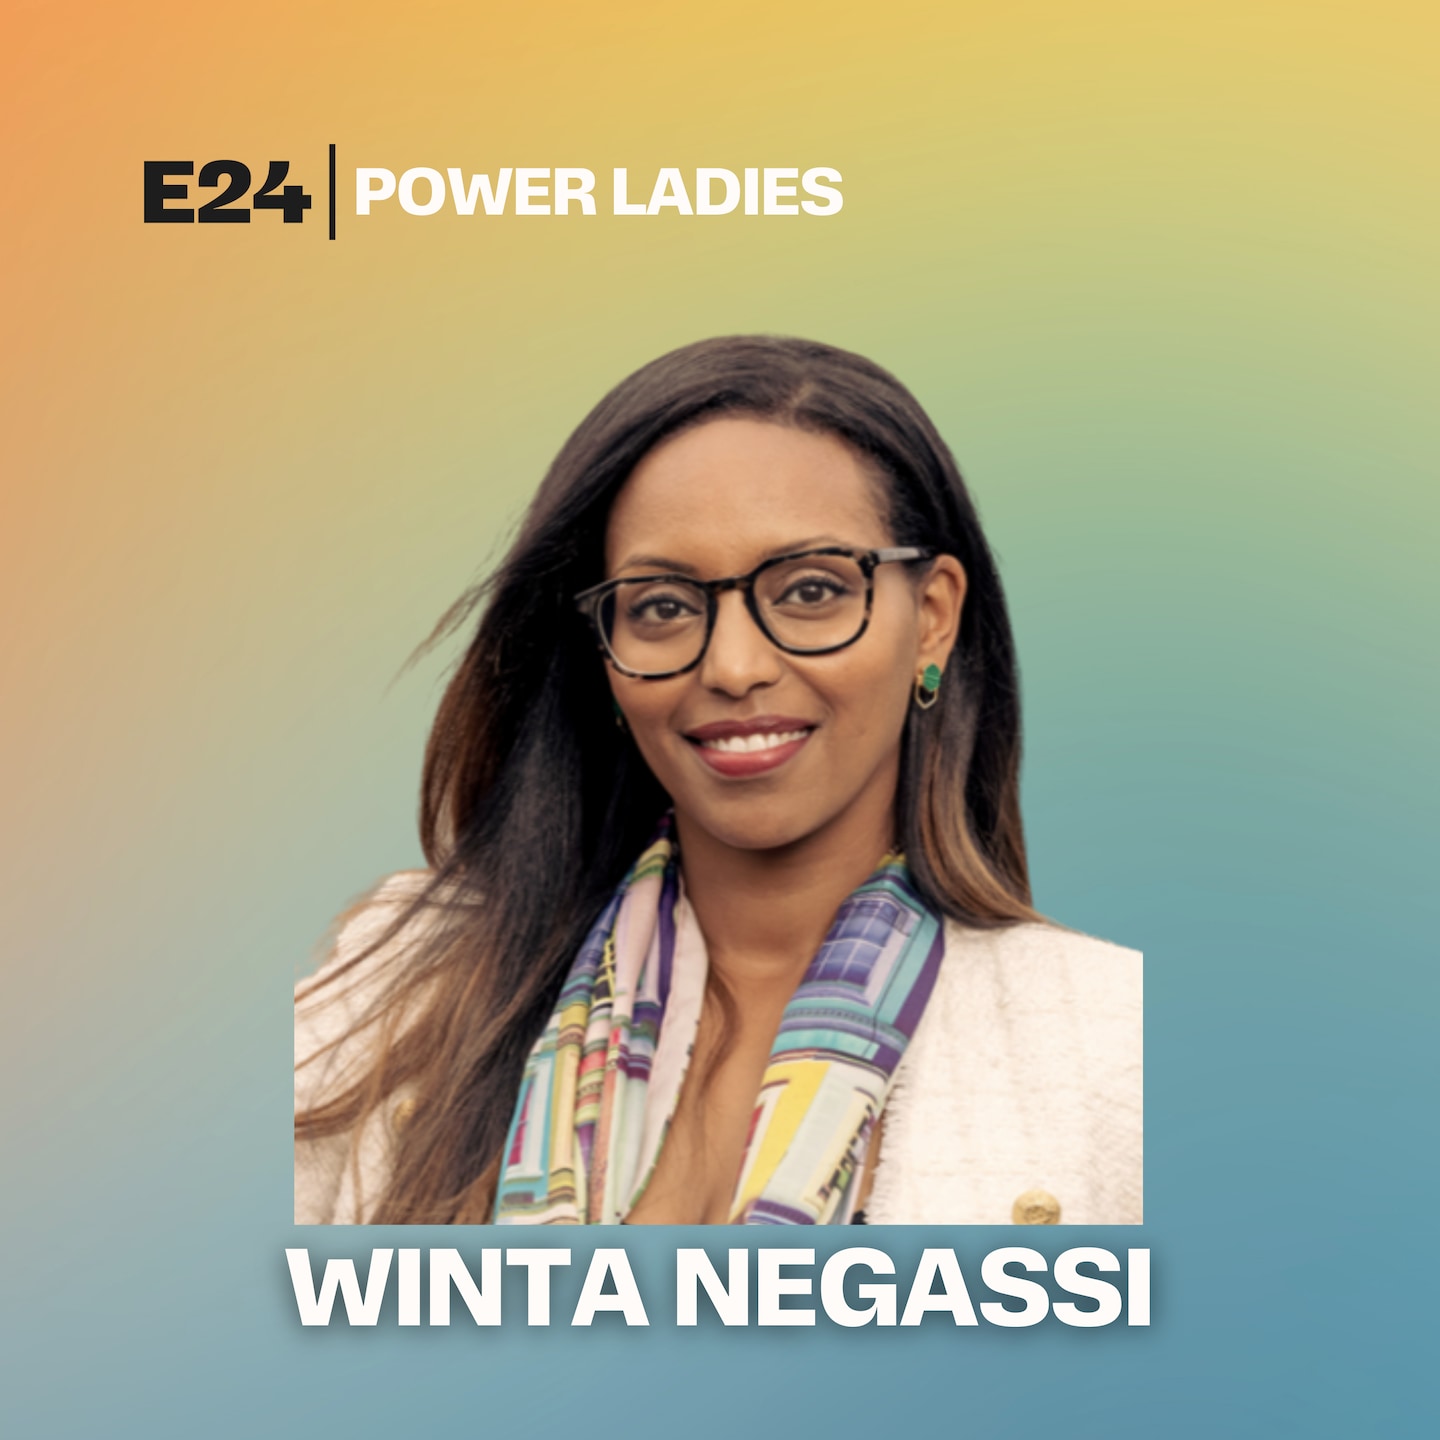 Winta Negassi: - Et tydelig budskap er essensielt